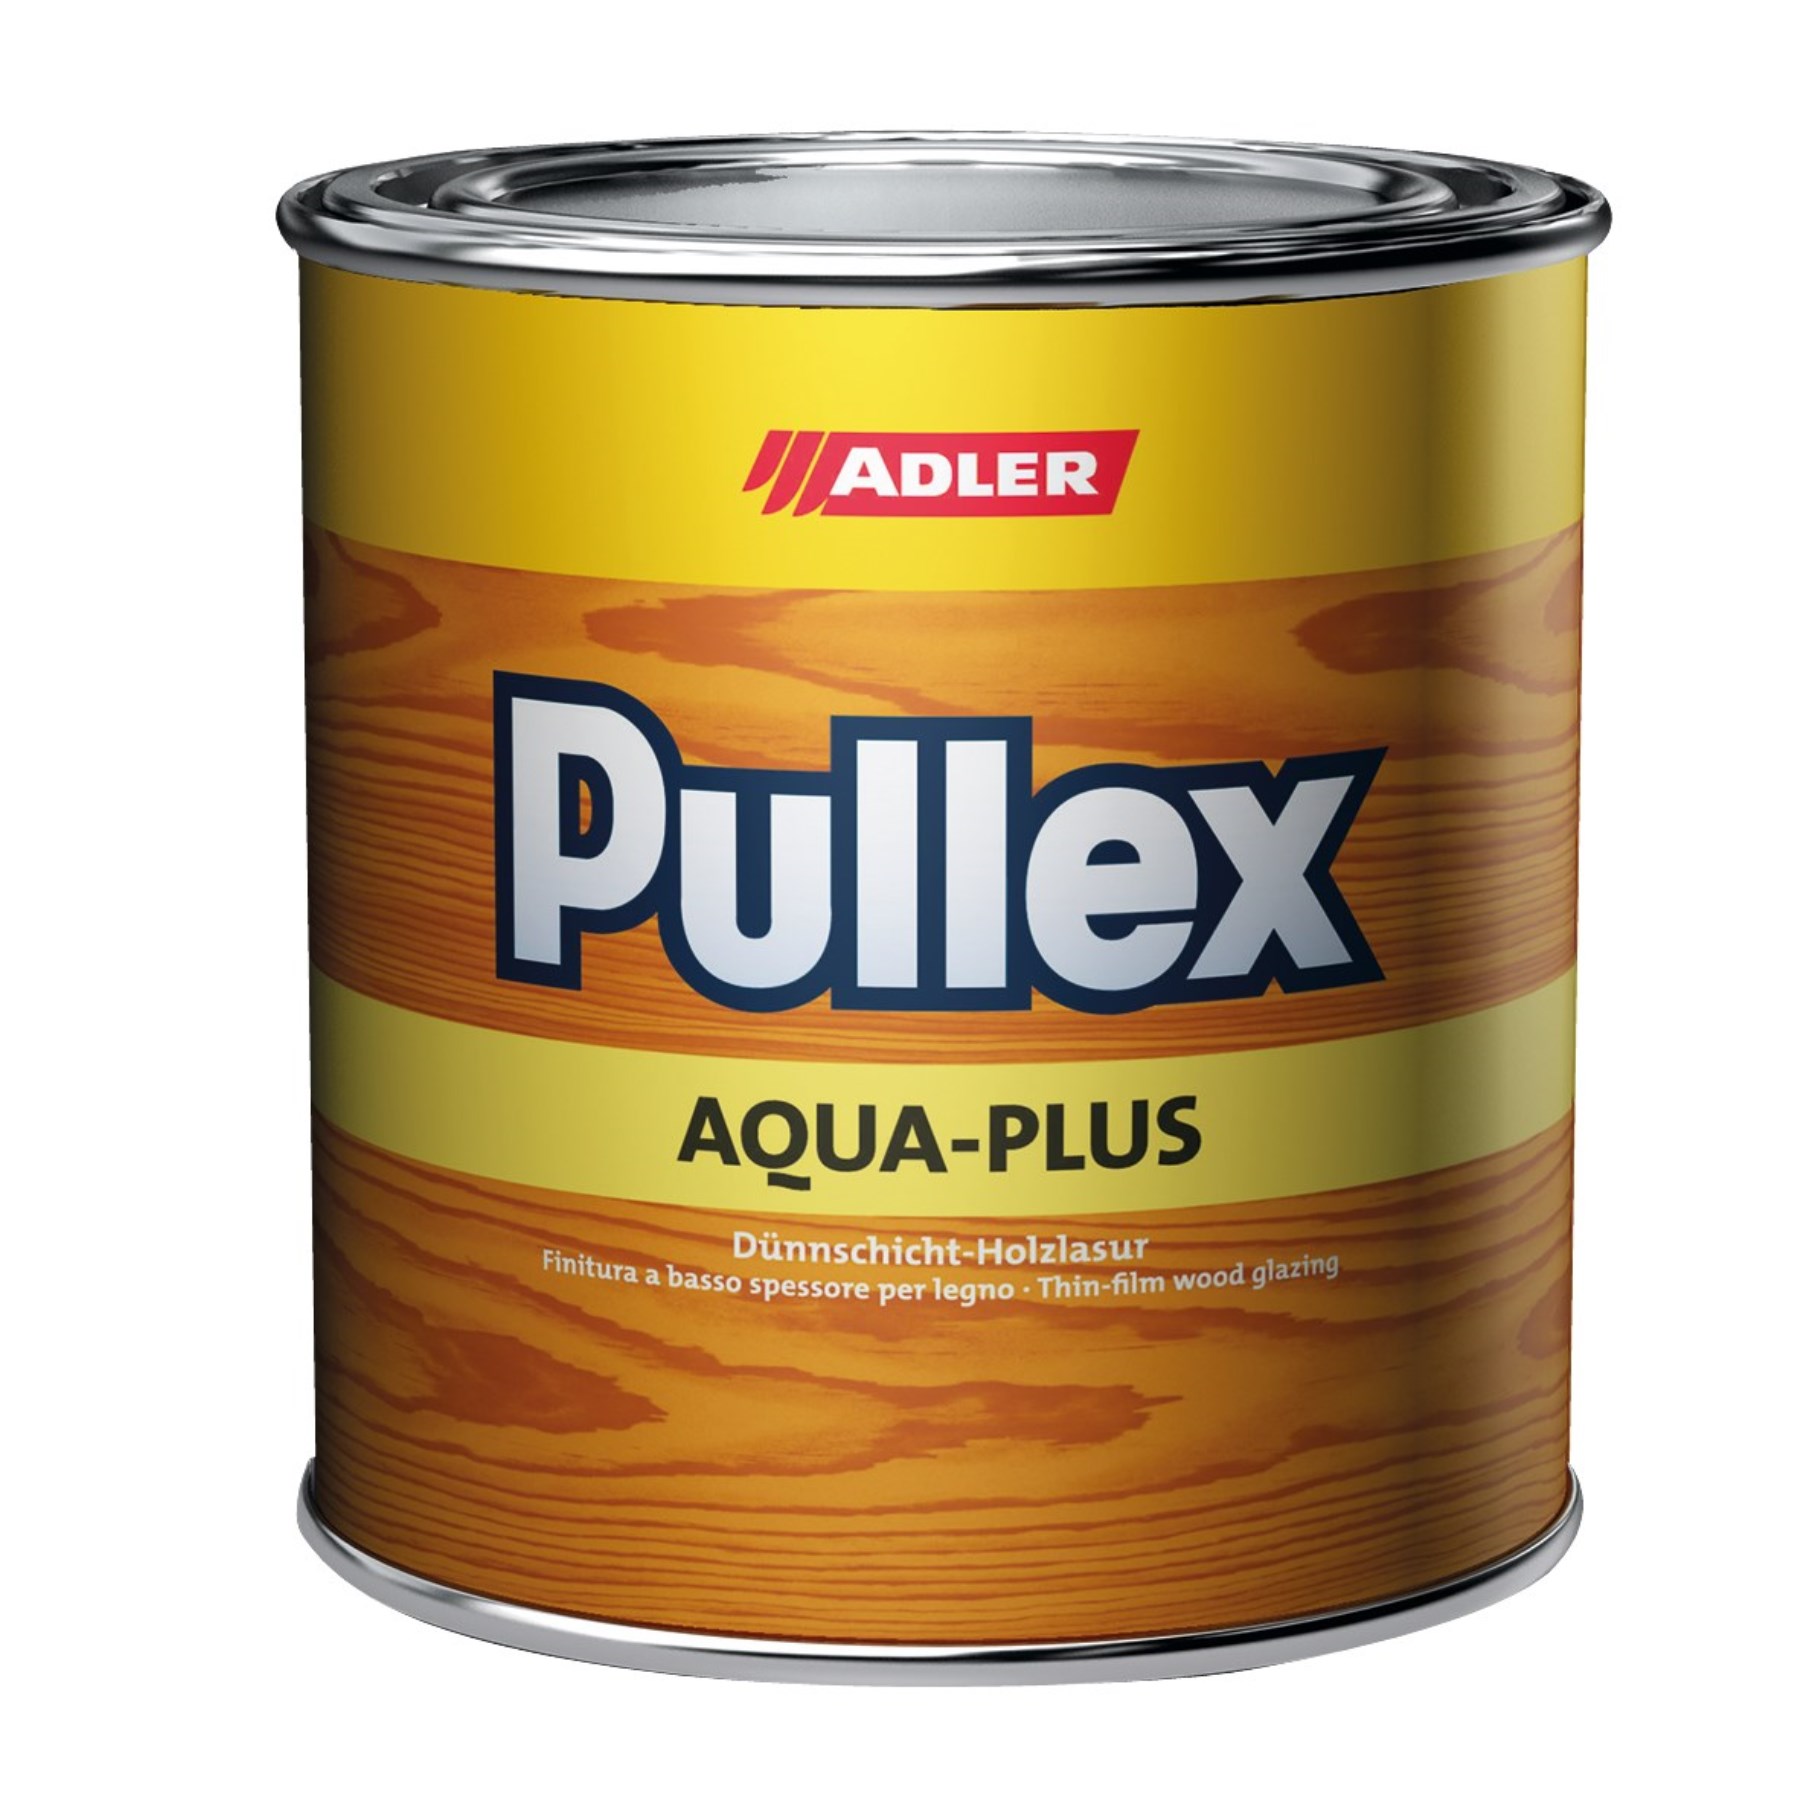 1094707 - Pullex Aqua